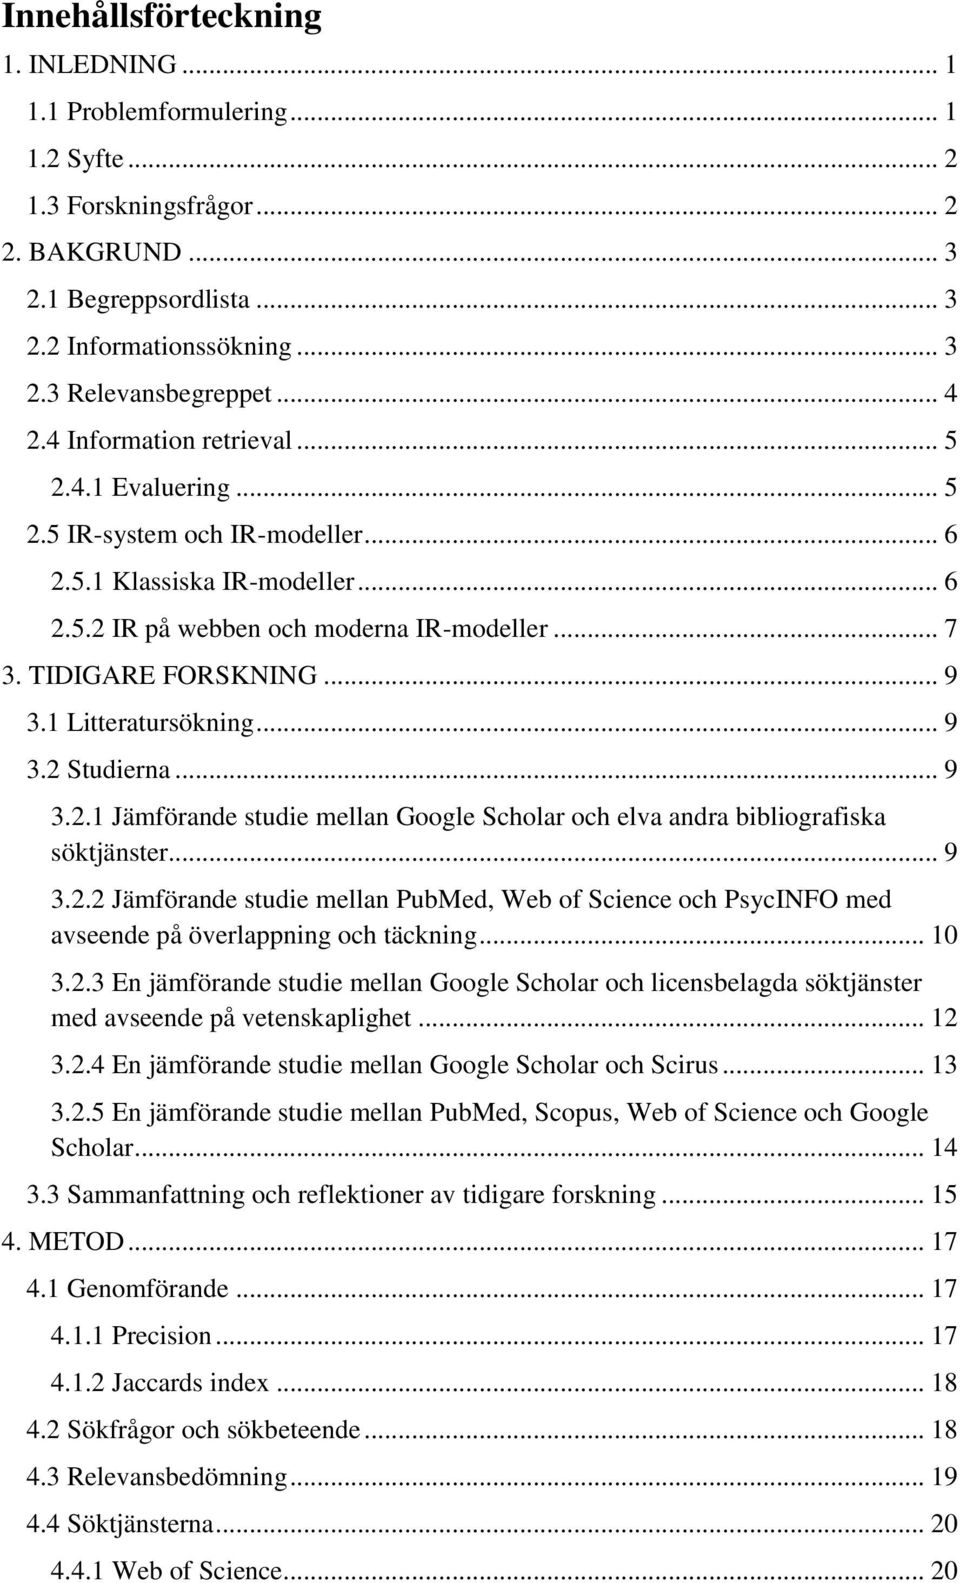 .. 9 3.1 Litteratursökning... 9 3.2 Studierna... 9 3.2.1 Jämförande studie mellan Google Scholar och elva andra bibliografiska söktjänster... 9 3.2.2 Jämförande studie mellan PubMed, Web of Science och PsycINFO med avseende på överlappning och täckning.